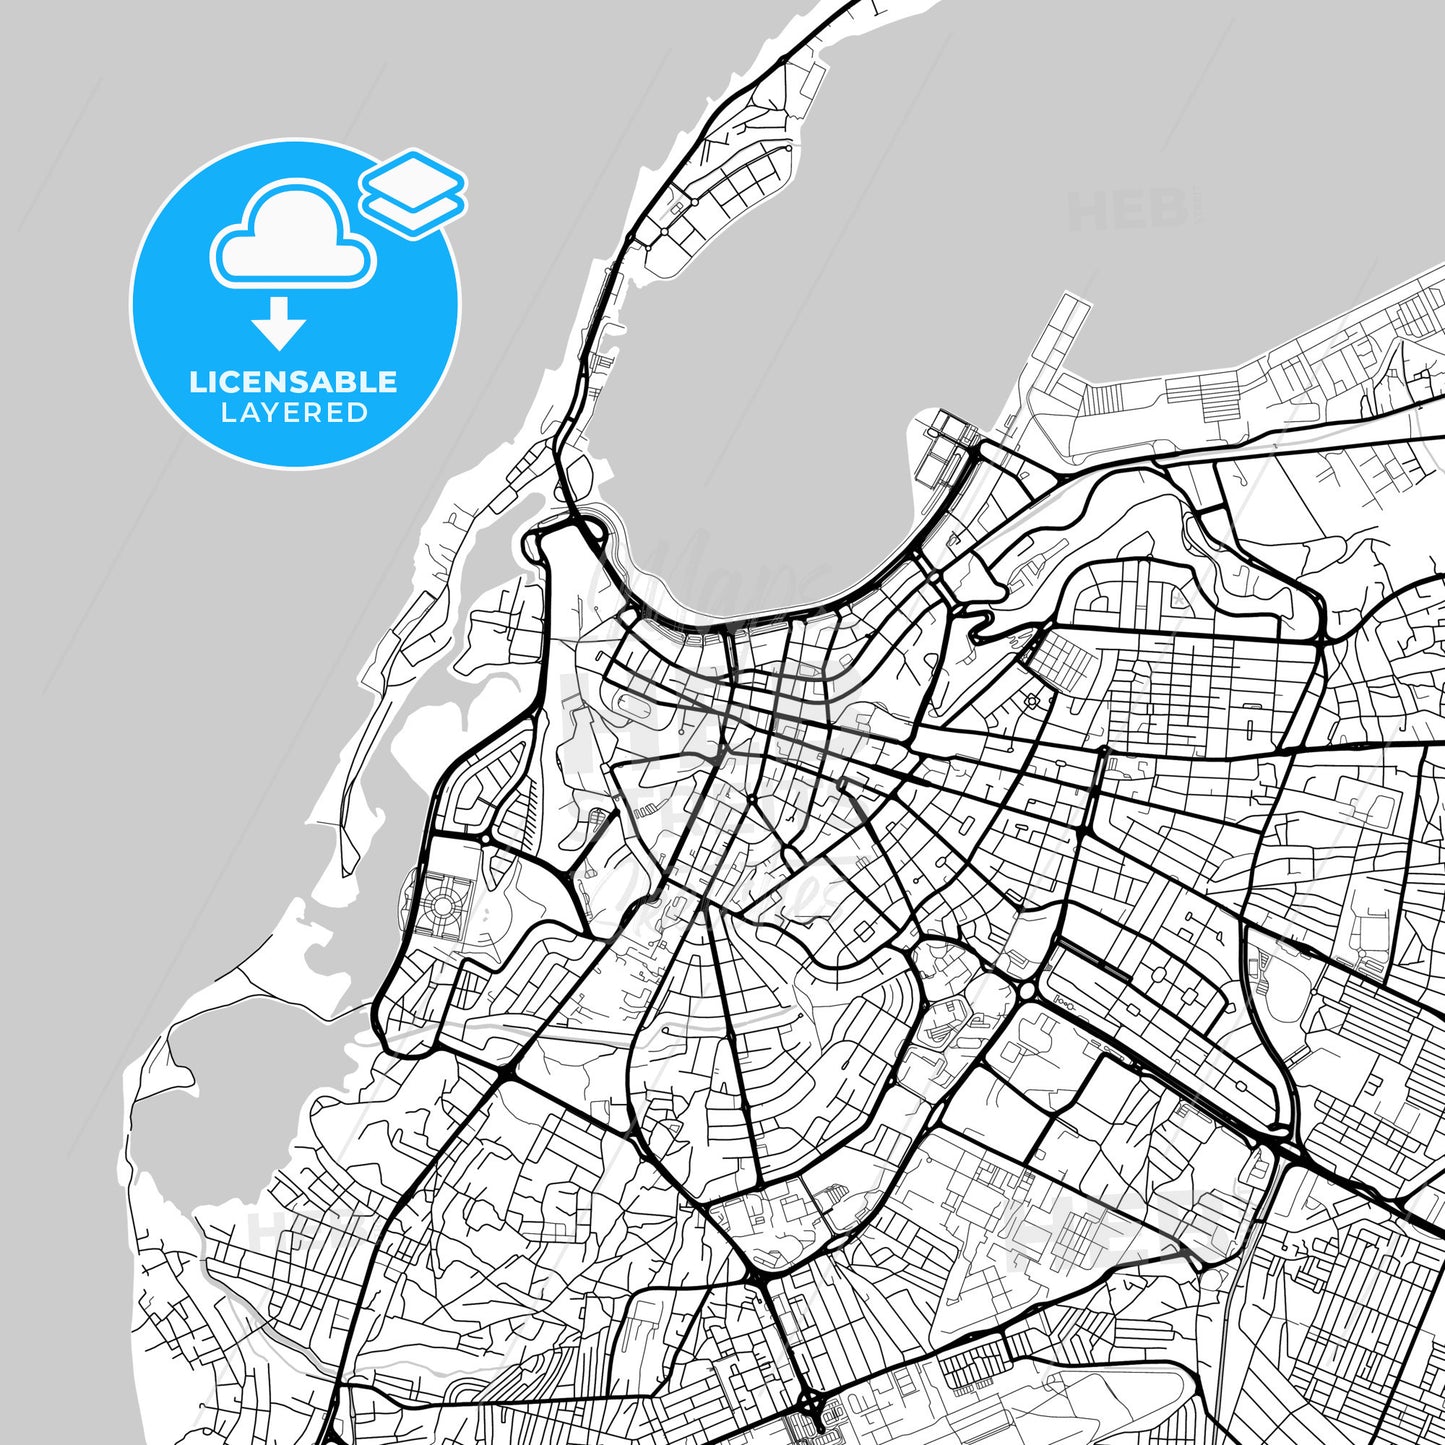 Layered PDF map of Luanda, Angola